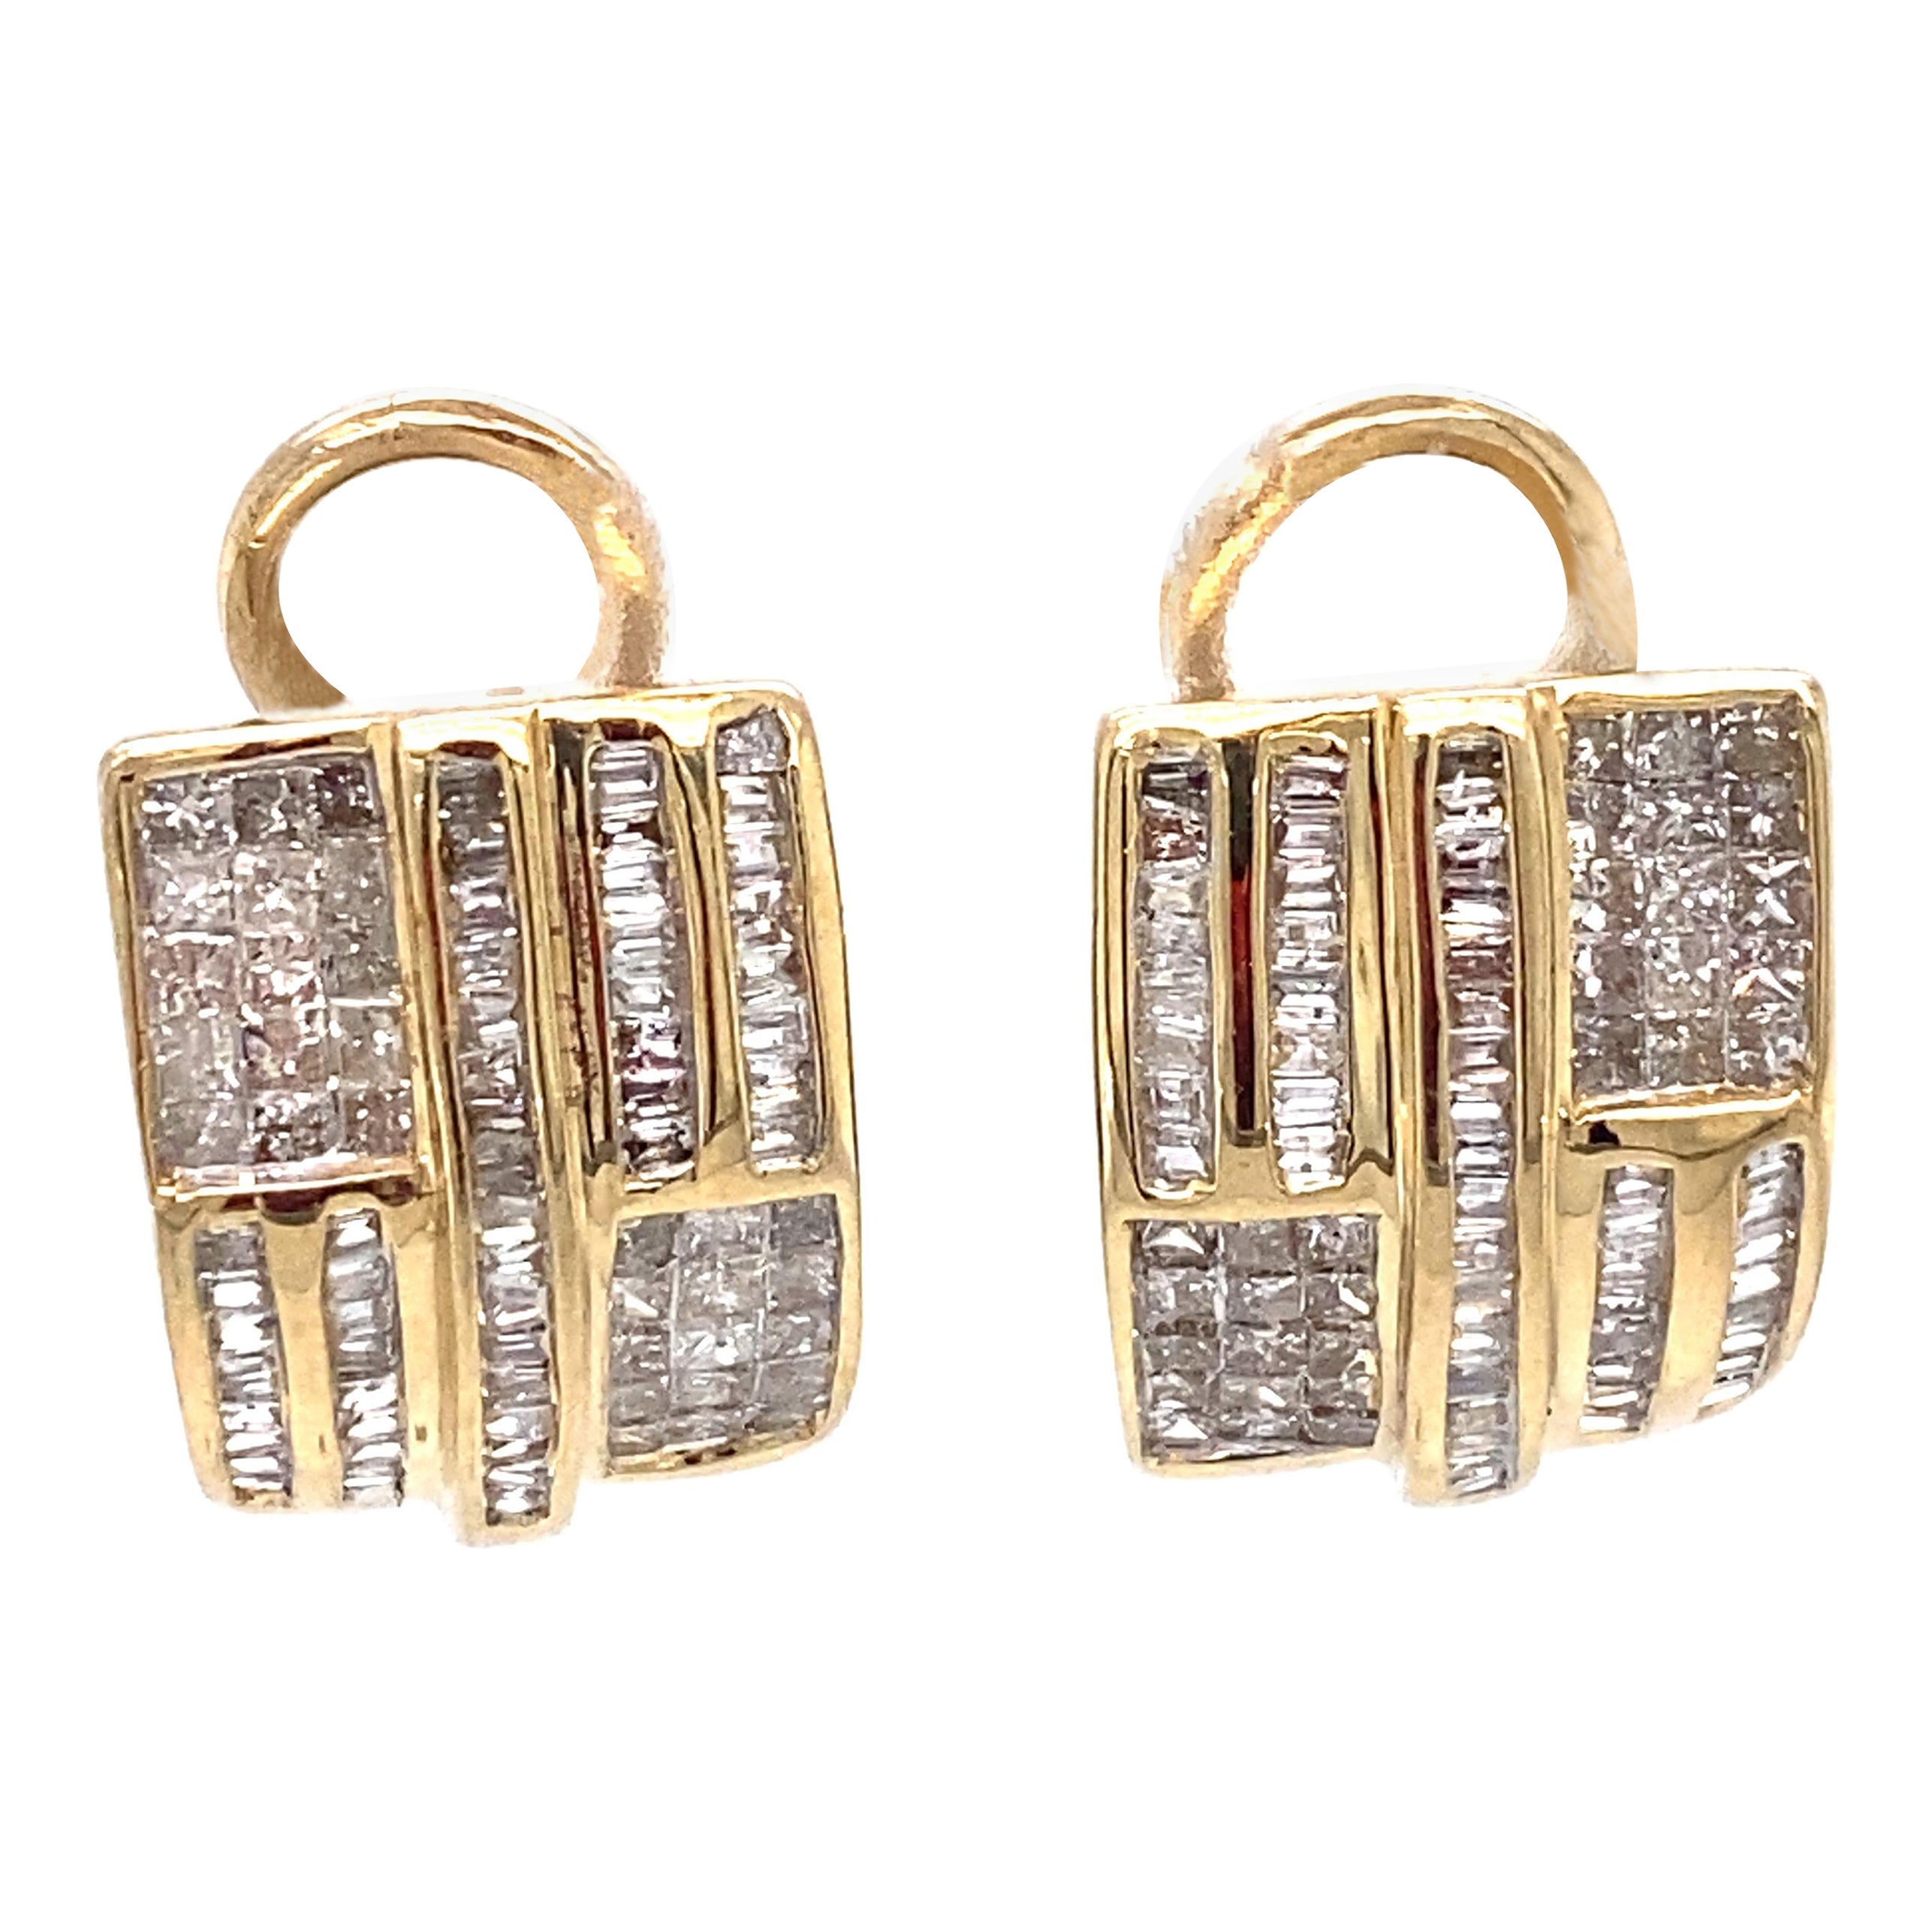 1.50 Carat Square Diamond Half Hoop Earrings in 14 Karat Gold